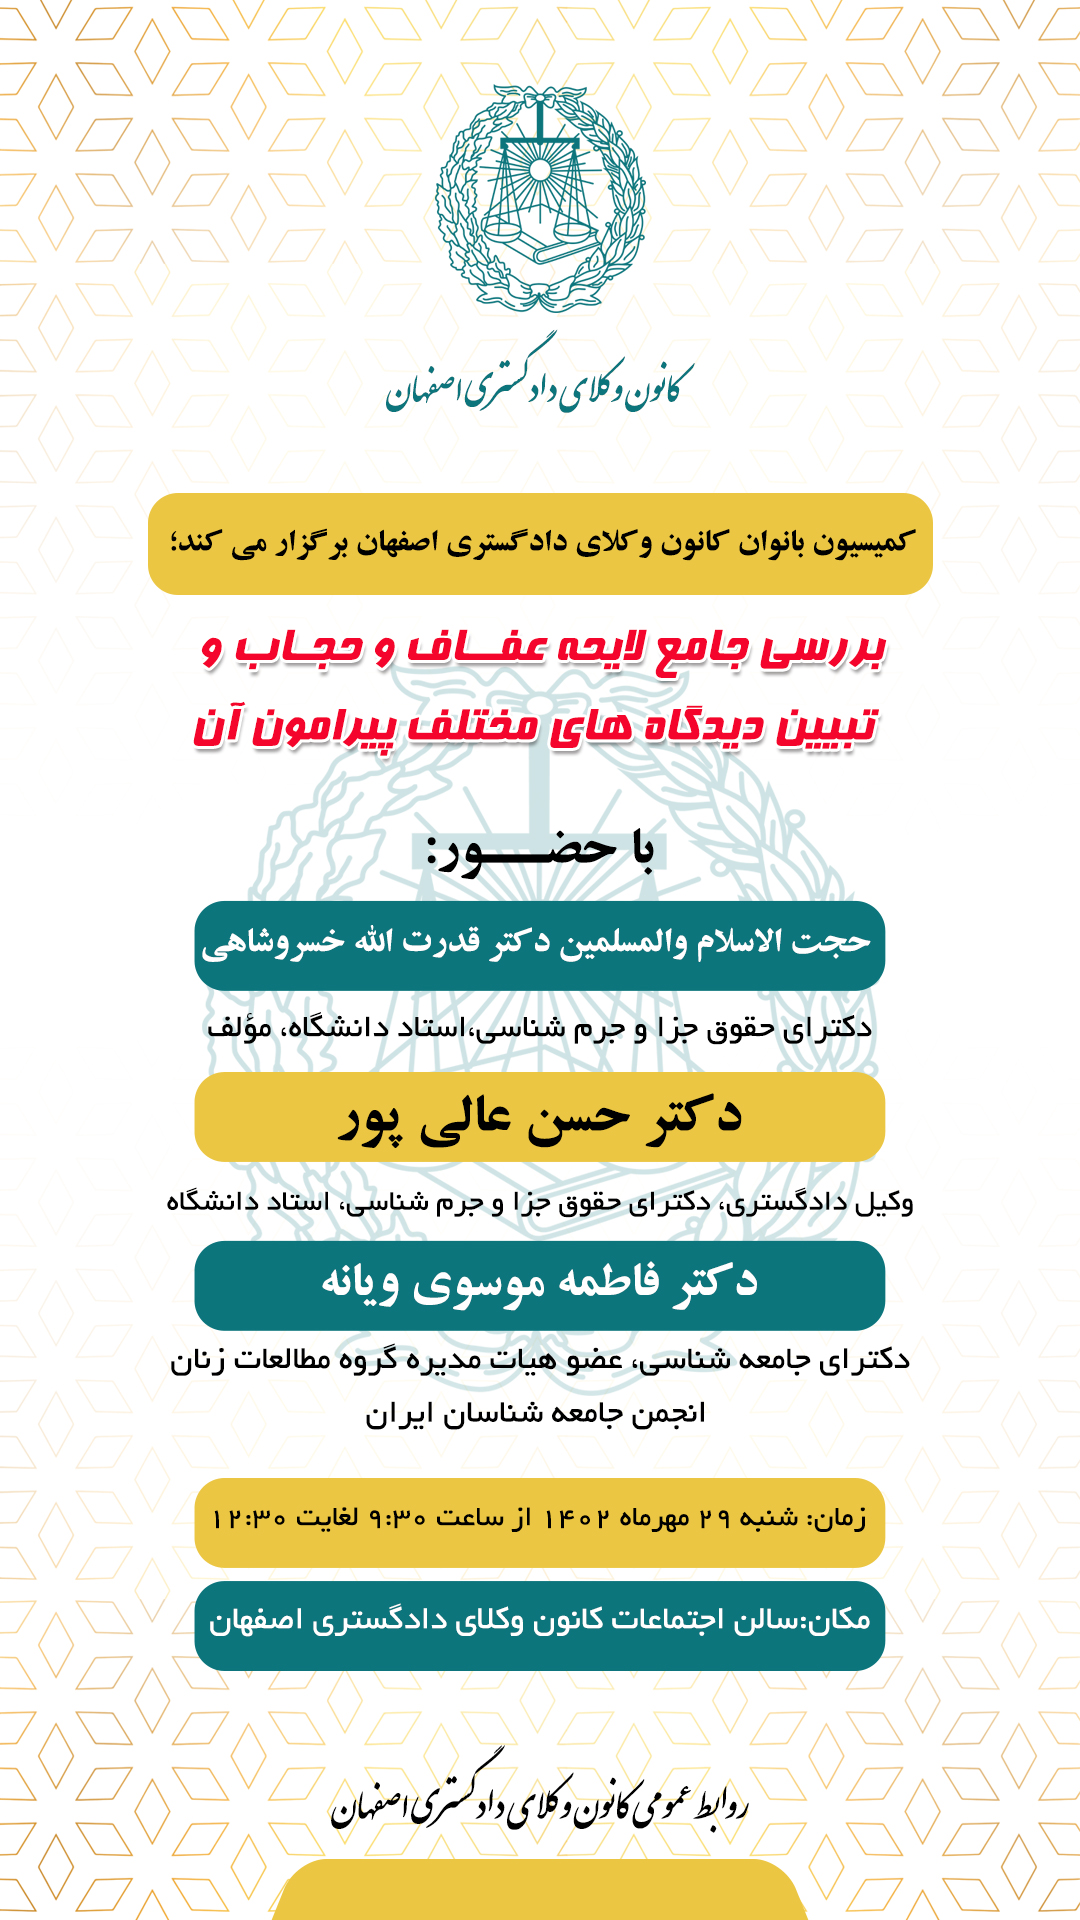 کمیسیون بانوان کانون وکلای دادگستری اصفهان برگزار می کند